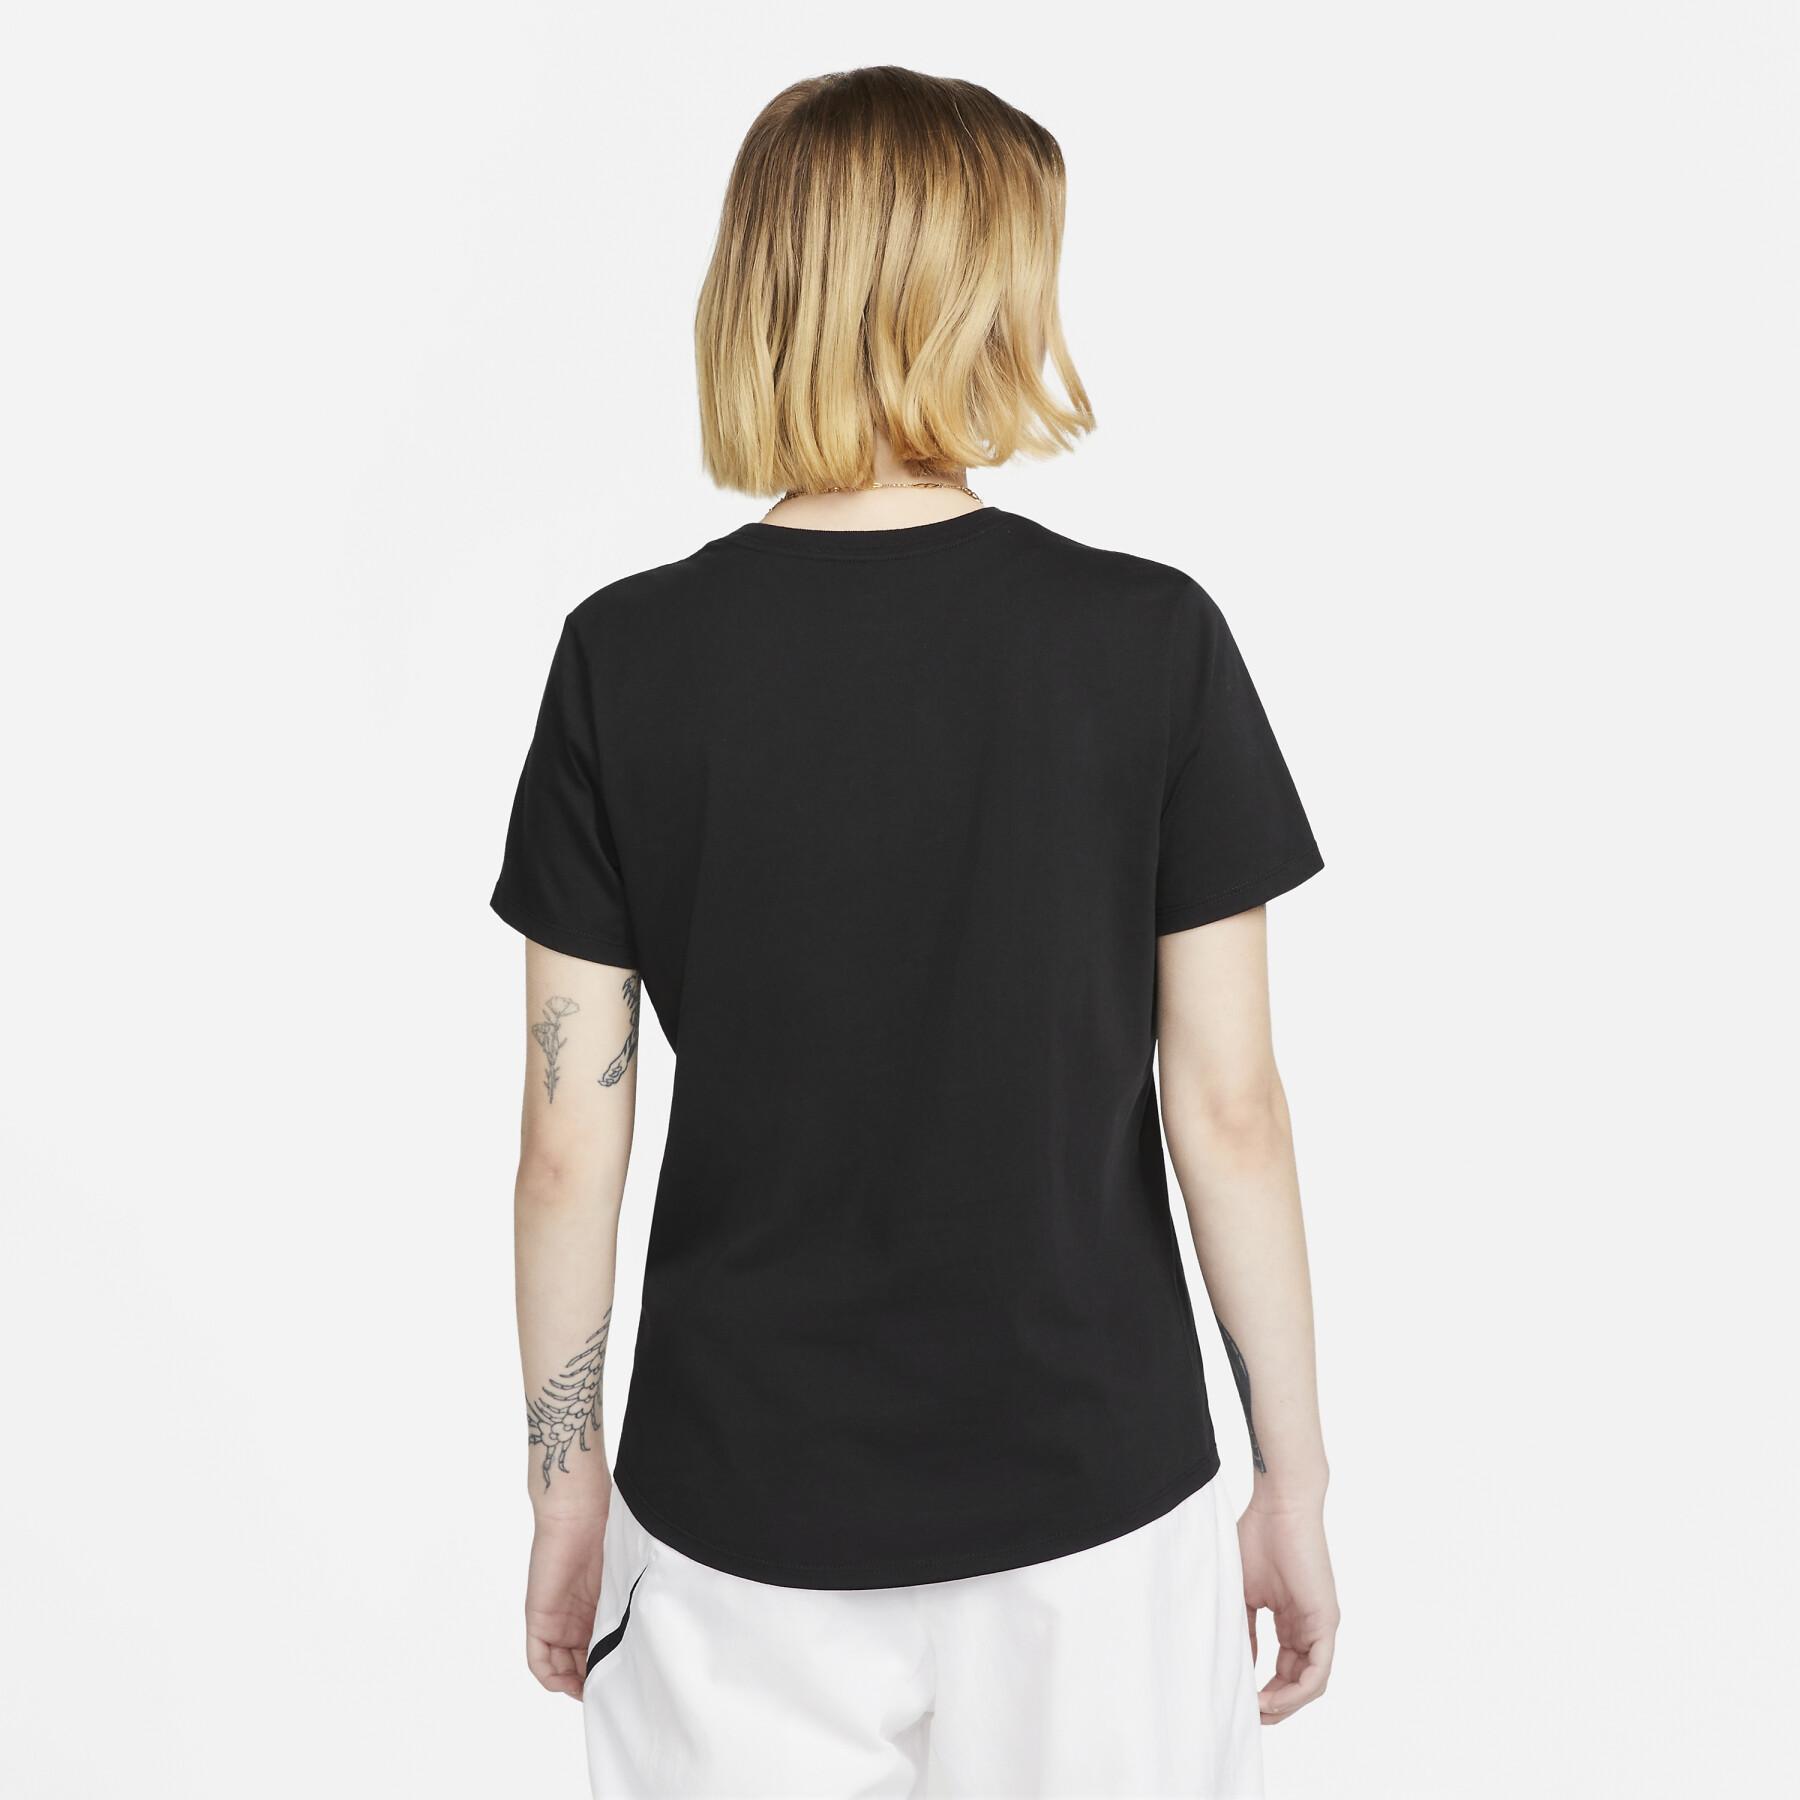 T-shirt Noir Femme Nike Earth Day - Mode femme